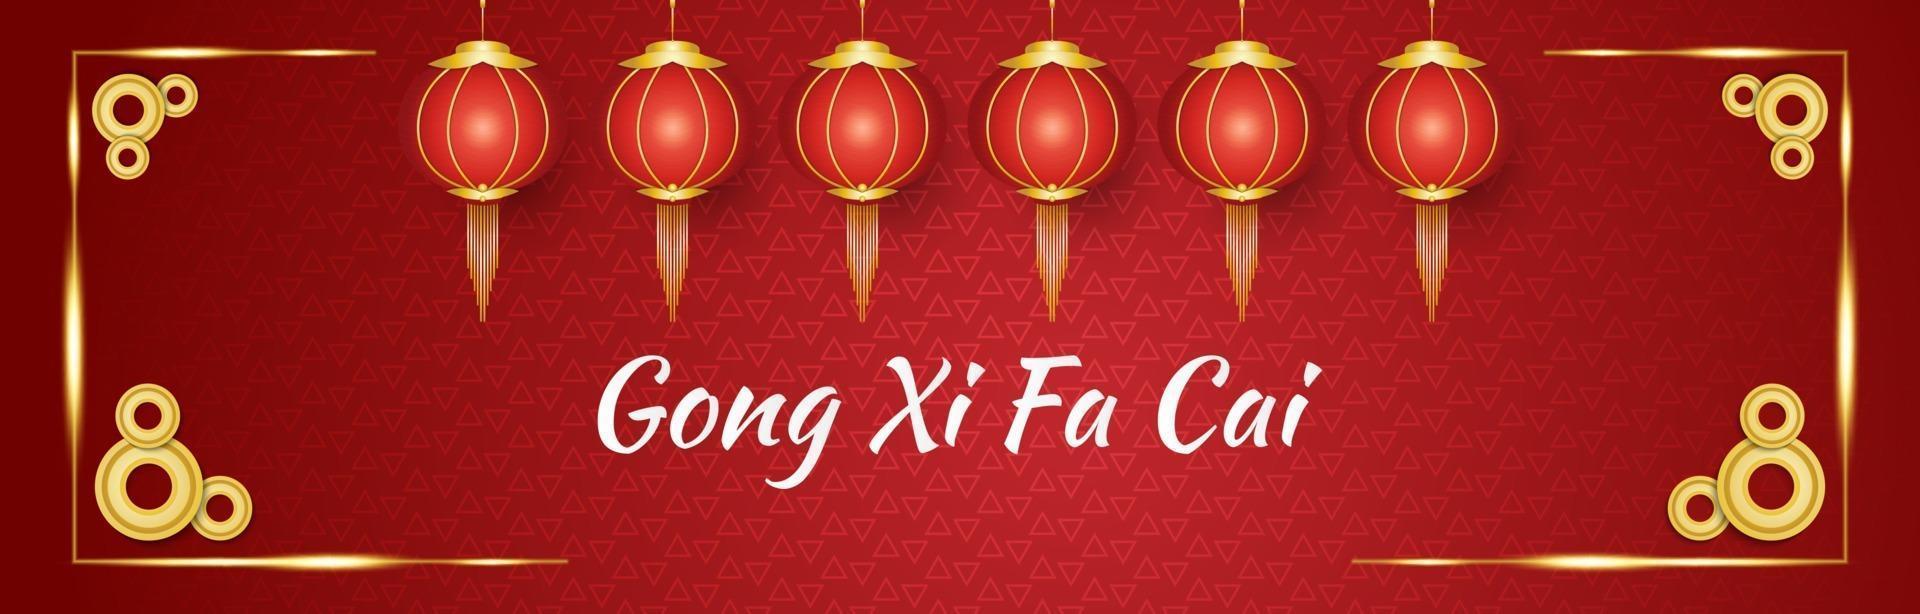 gong xi fa cai groet banner met rode en gouden lantaarns en munten op een rode sierachtergrond vector